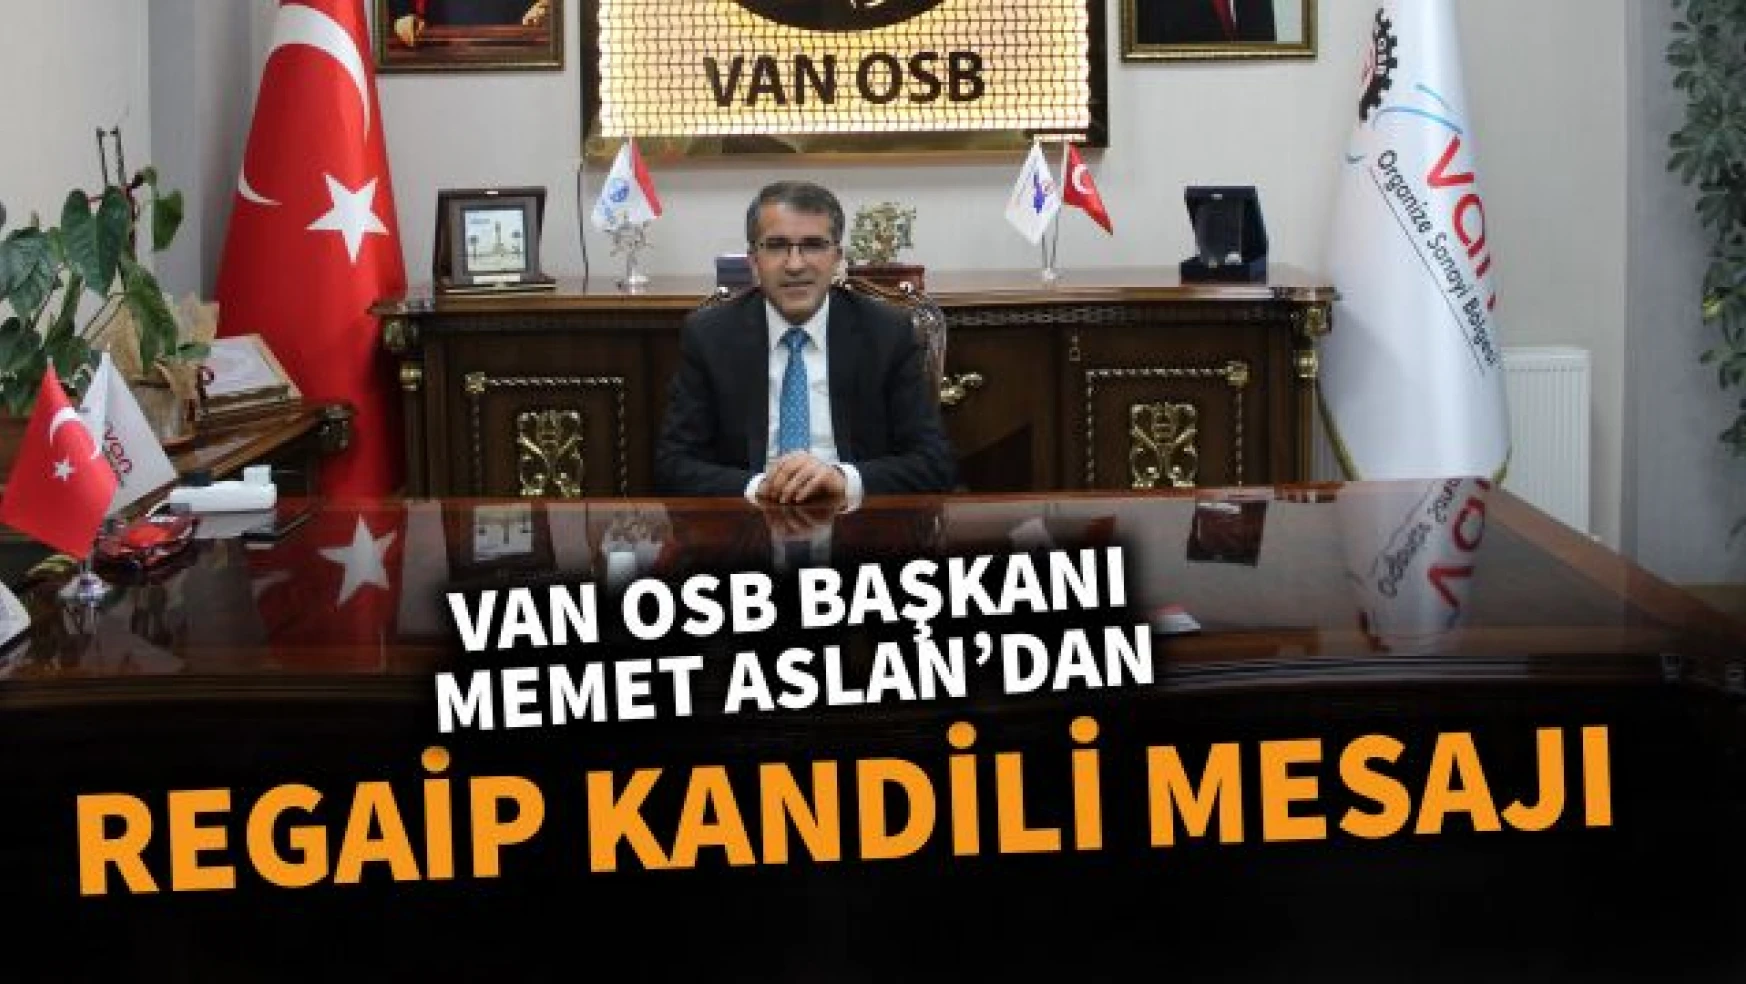 Van OSB Başkanı Memet Aslan'dan Regaip Kandili Mesajı